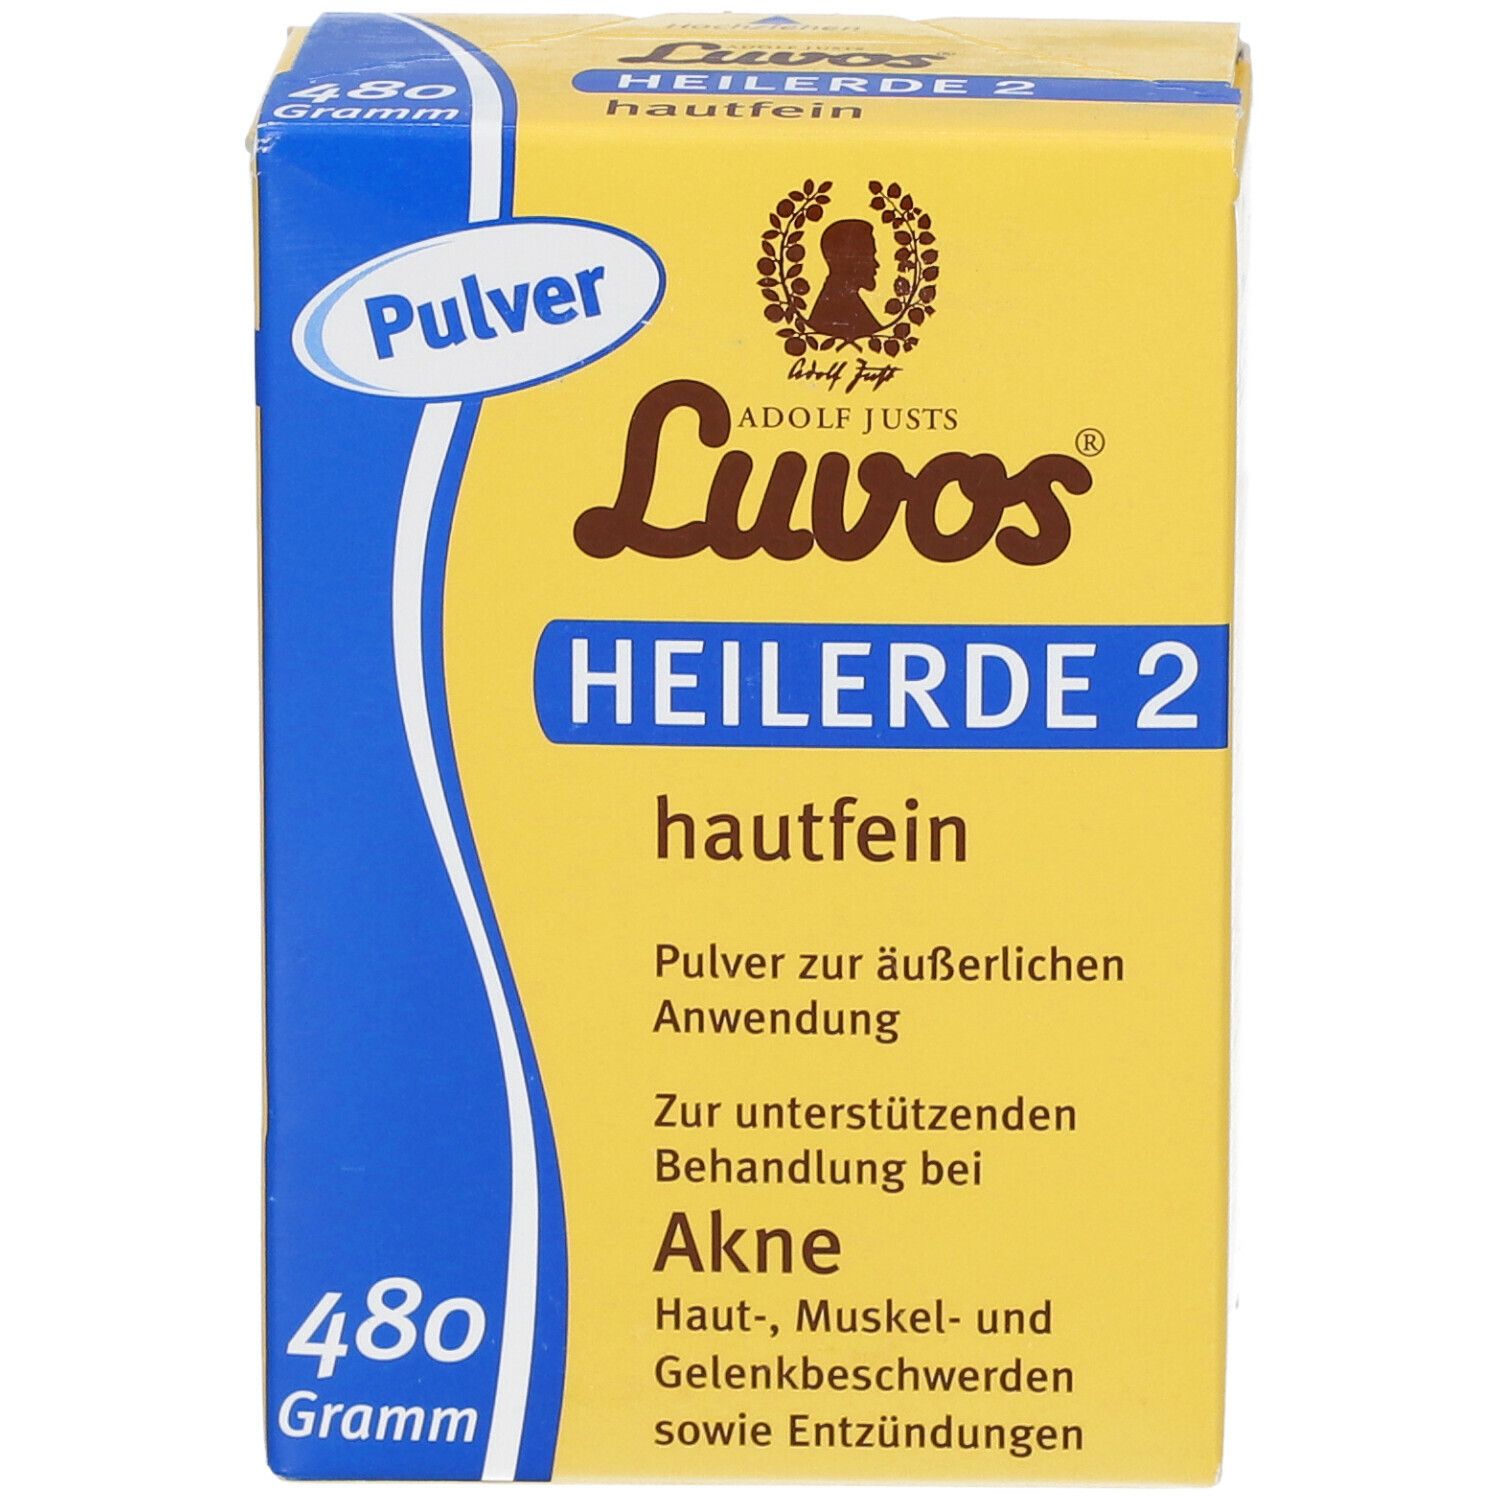 Luvos-Heilerde 2 hautfein